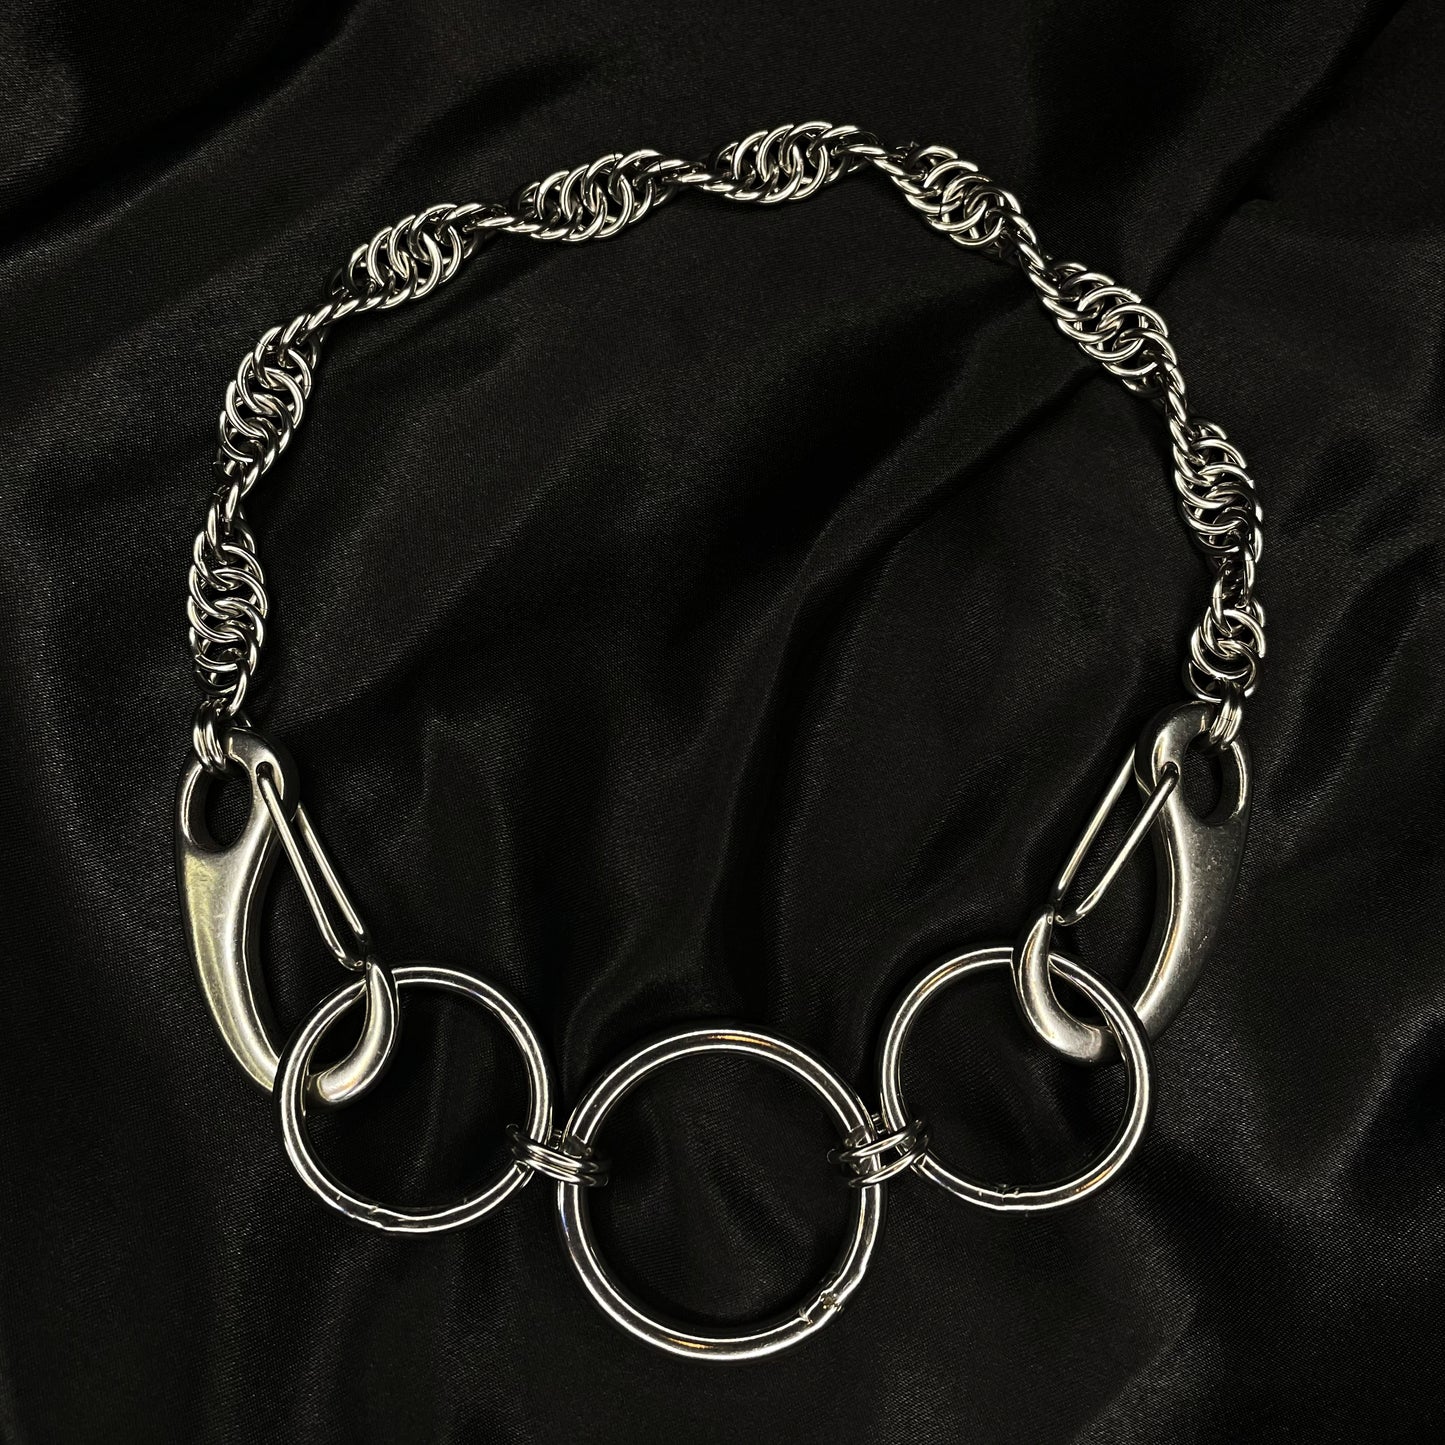 the spiral carabiner collar